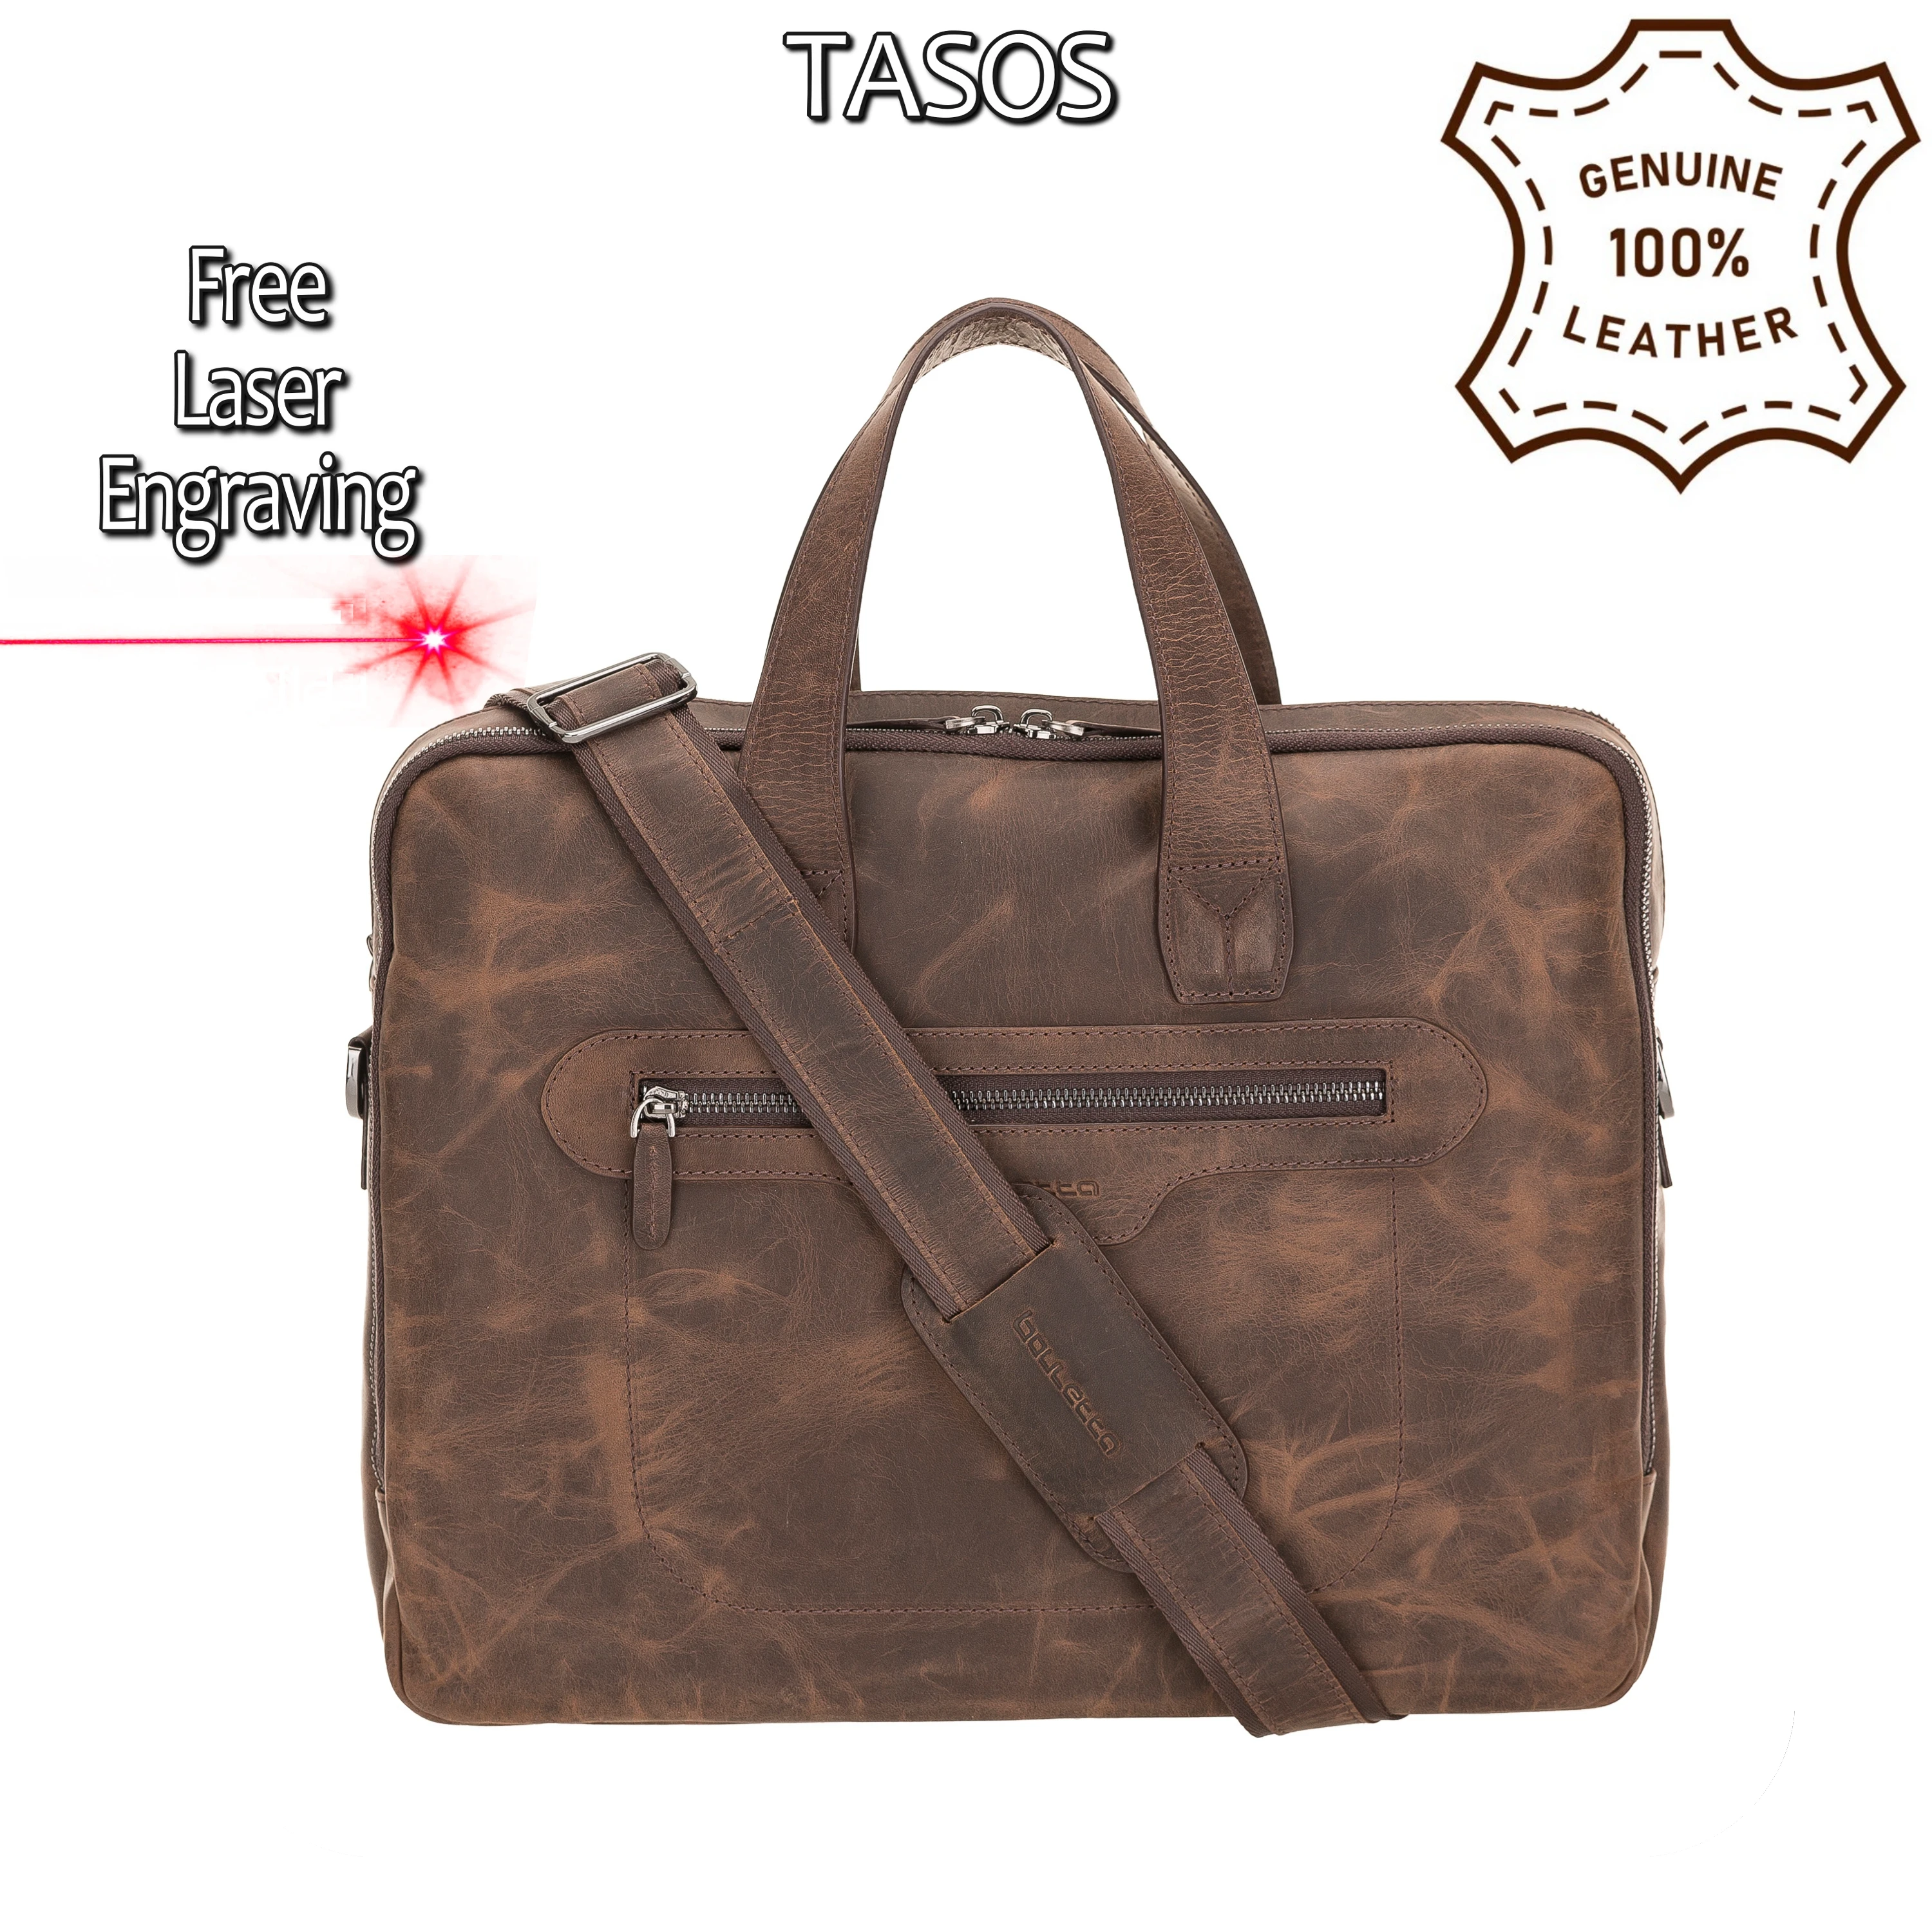 Handmade Genuine Leather Briefcase Laptop Notebook Business Elegant Stylish Travel Durable Bag Handbag Shoulder Strap Brown